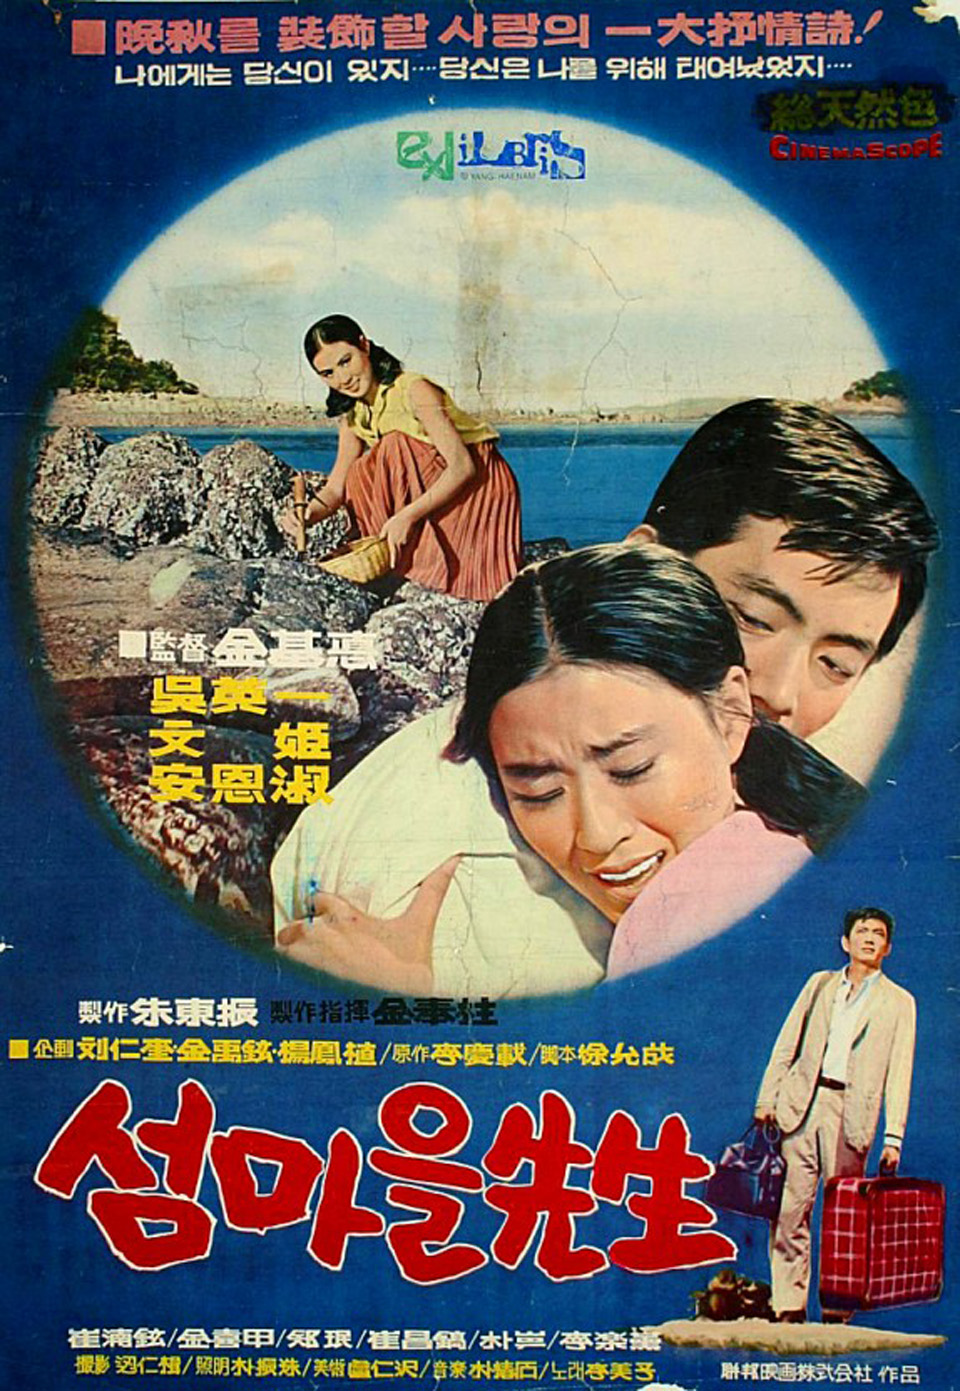 대이작도에서 촬영한 영화 ‘섬마을선생’ 포스터. 